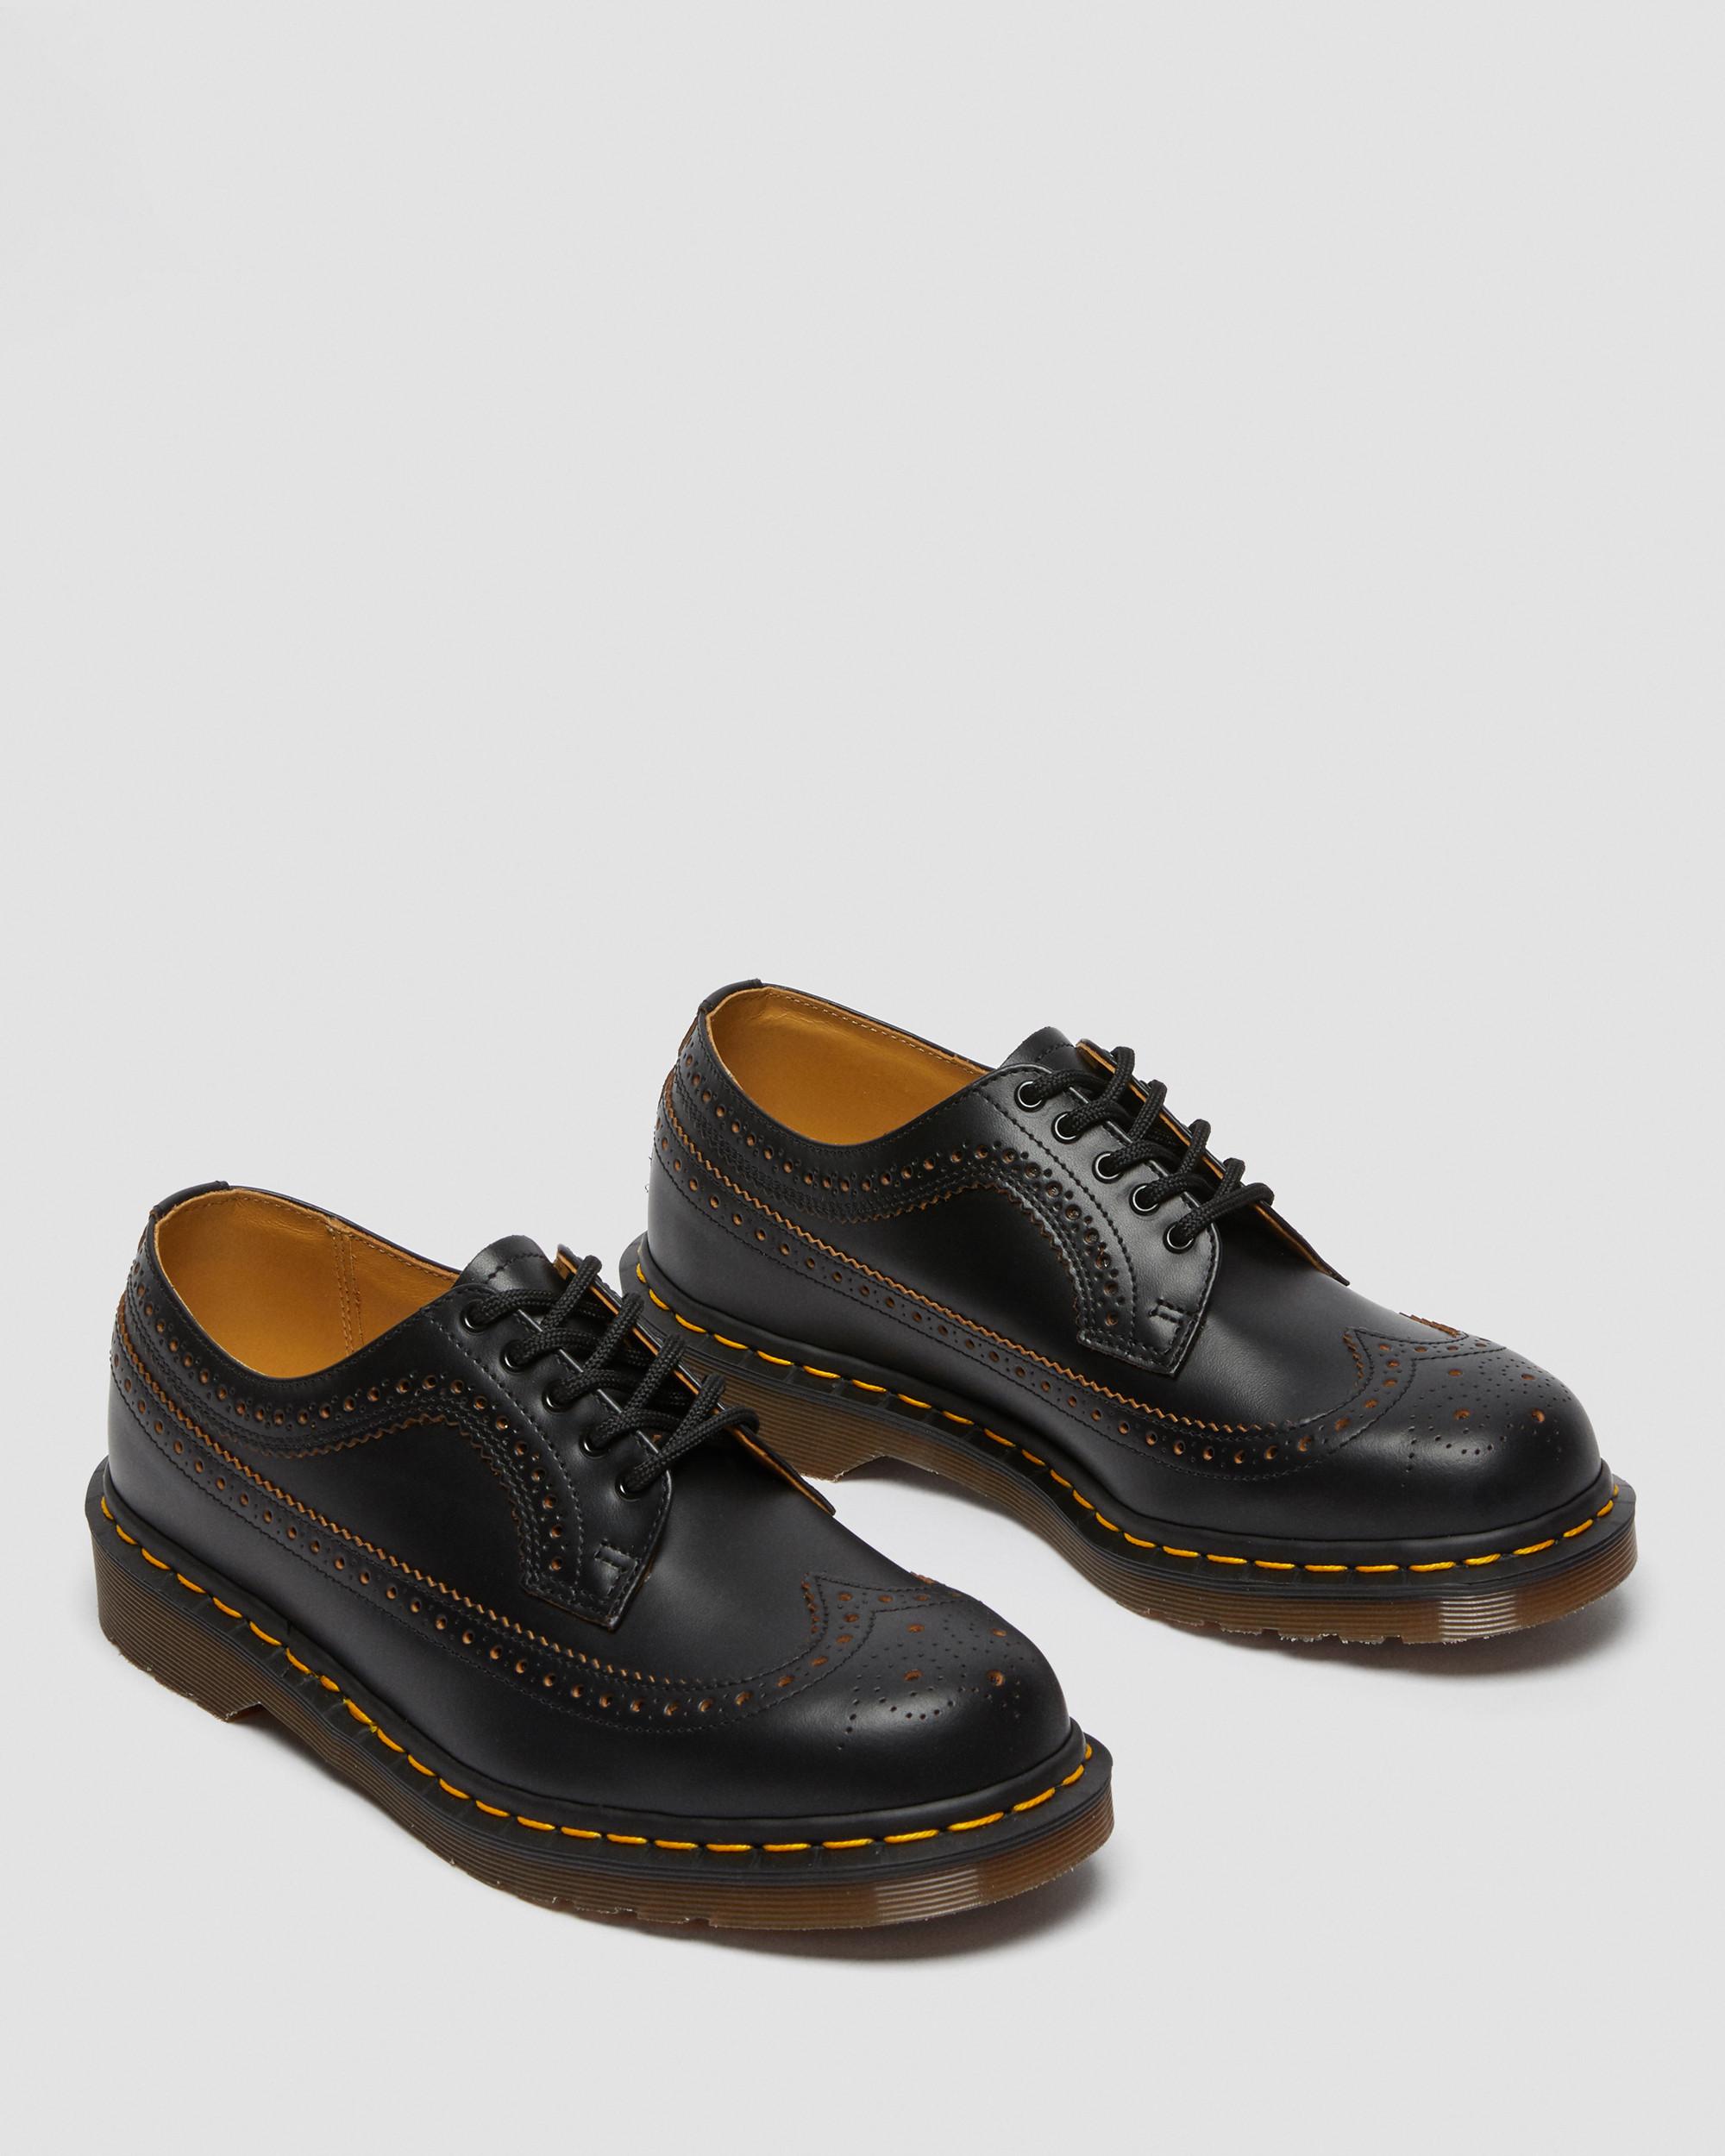 Vintage 3989 Quilon Leather Brogue Shoes, Black | Dr. Martens